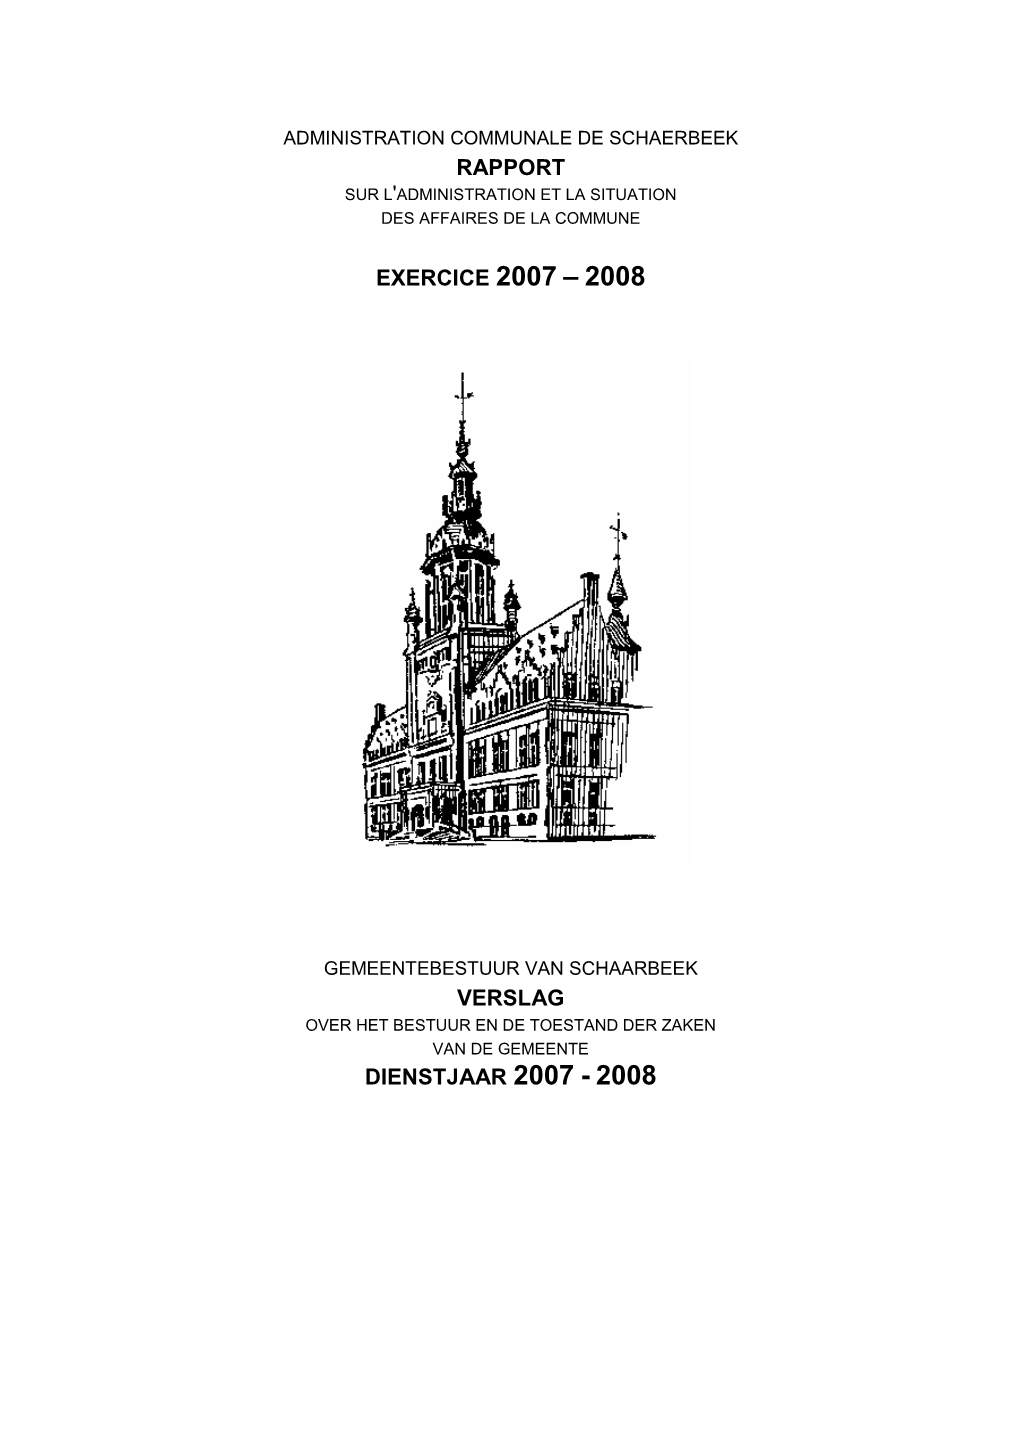 Jaarverslag 2007-2008